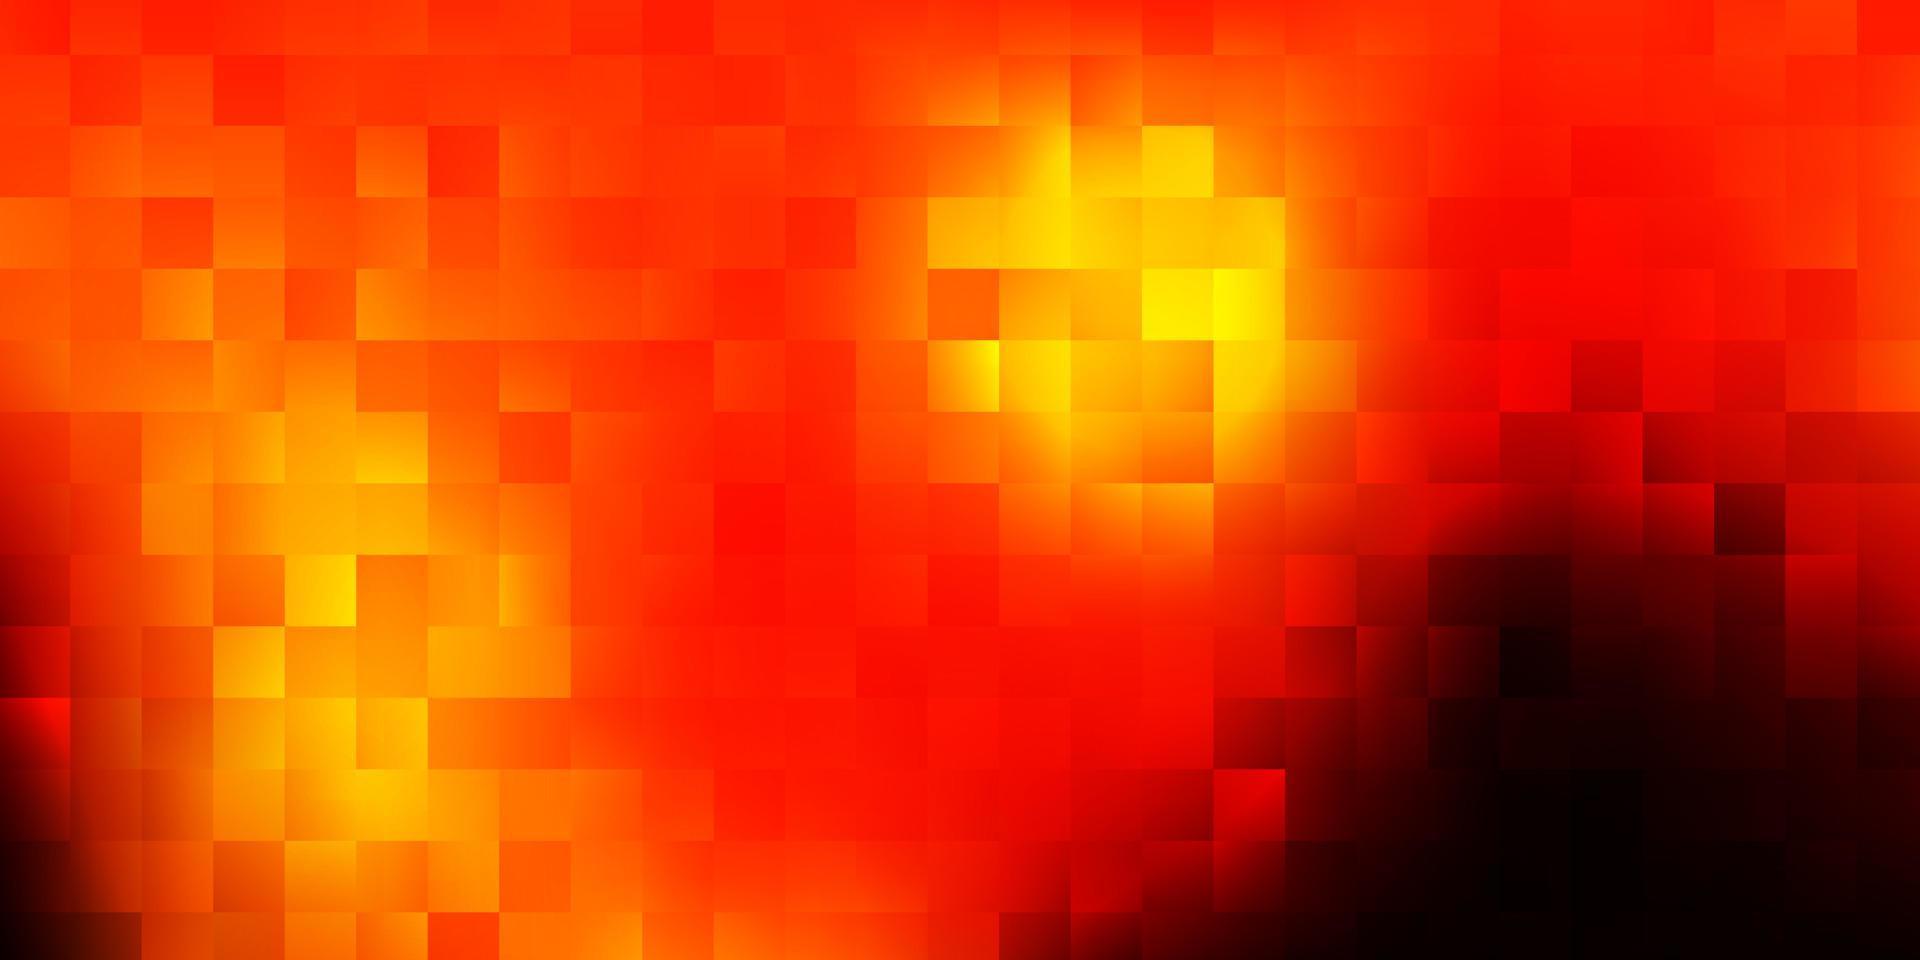 trama vettoriale arancione scuro in stile poligonale.